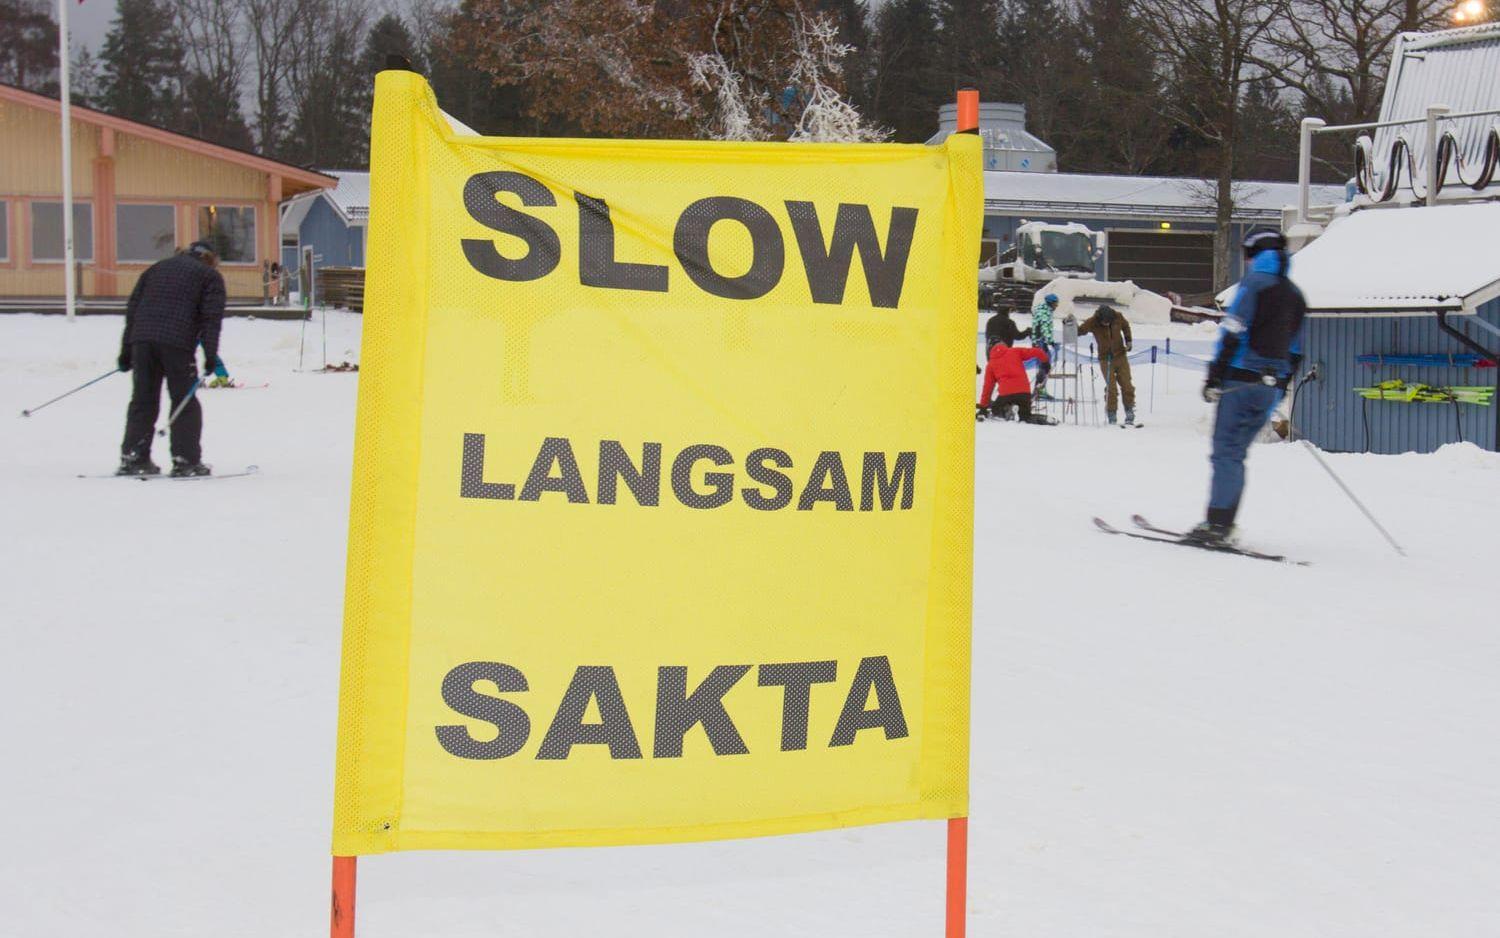 Sänkt fart. Det var säsongspremiär för skidåkning på Vallåsen på lördagen. Bild: Jonatan Gernes